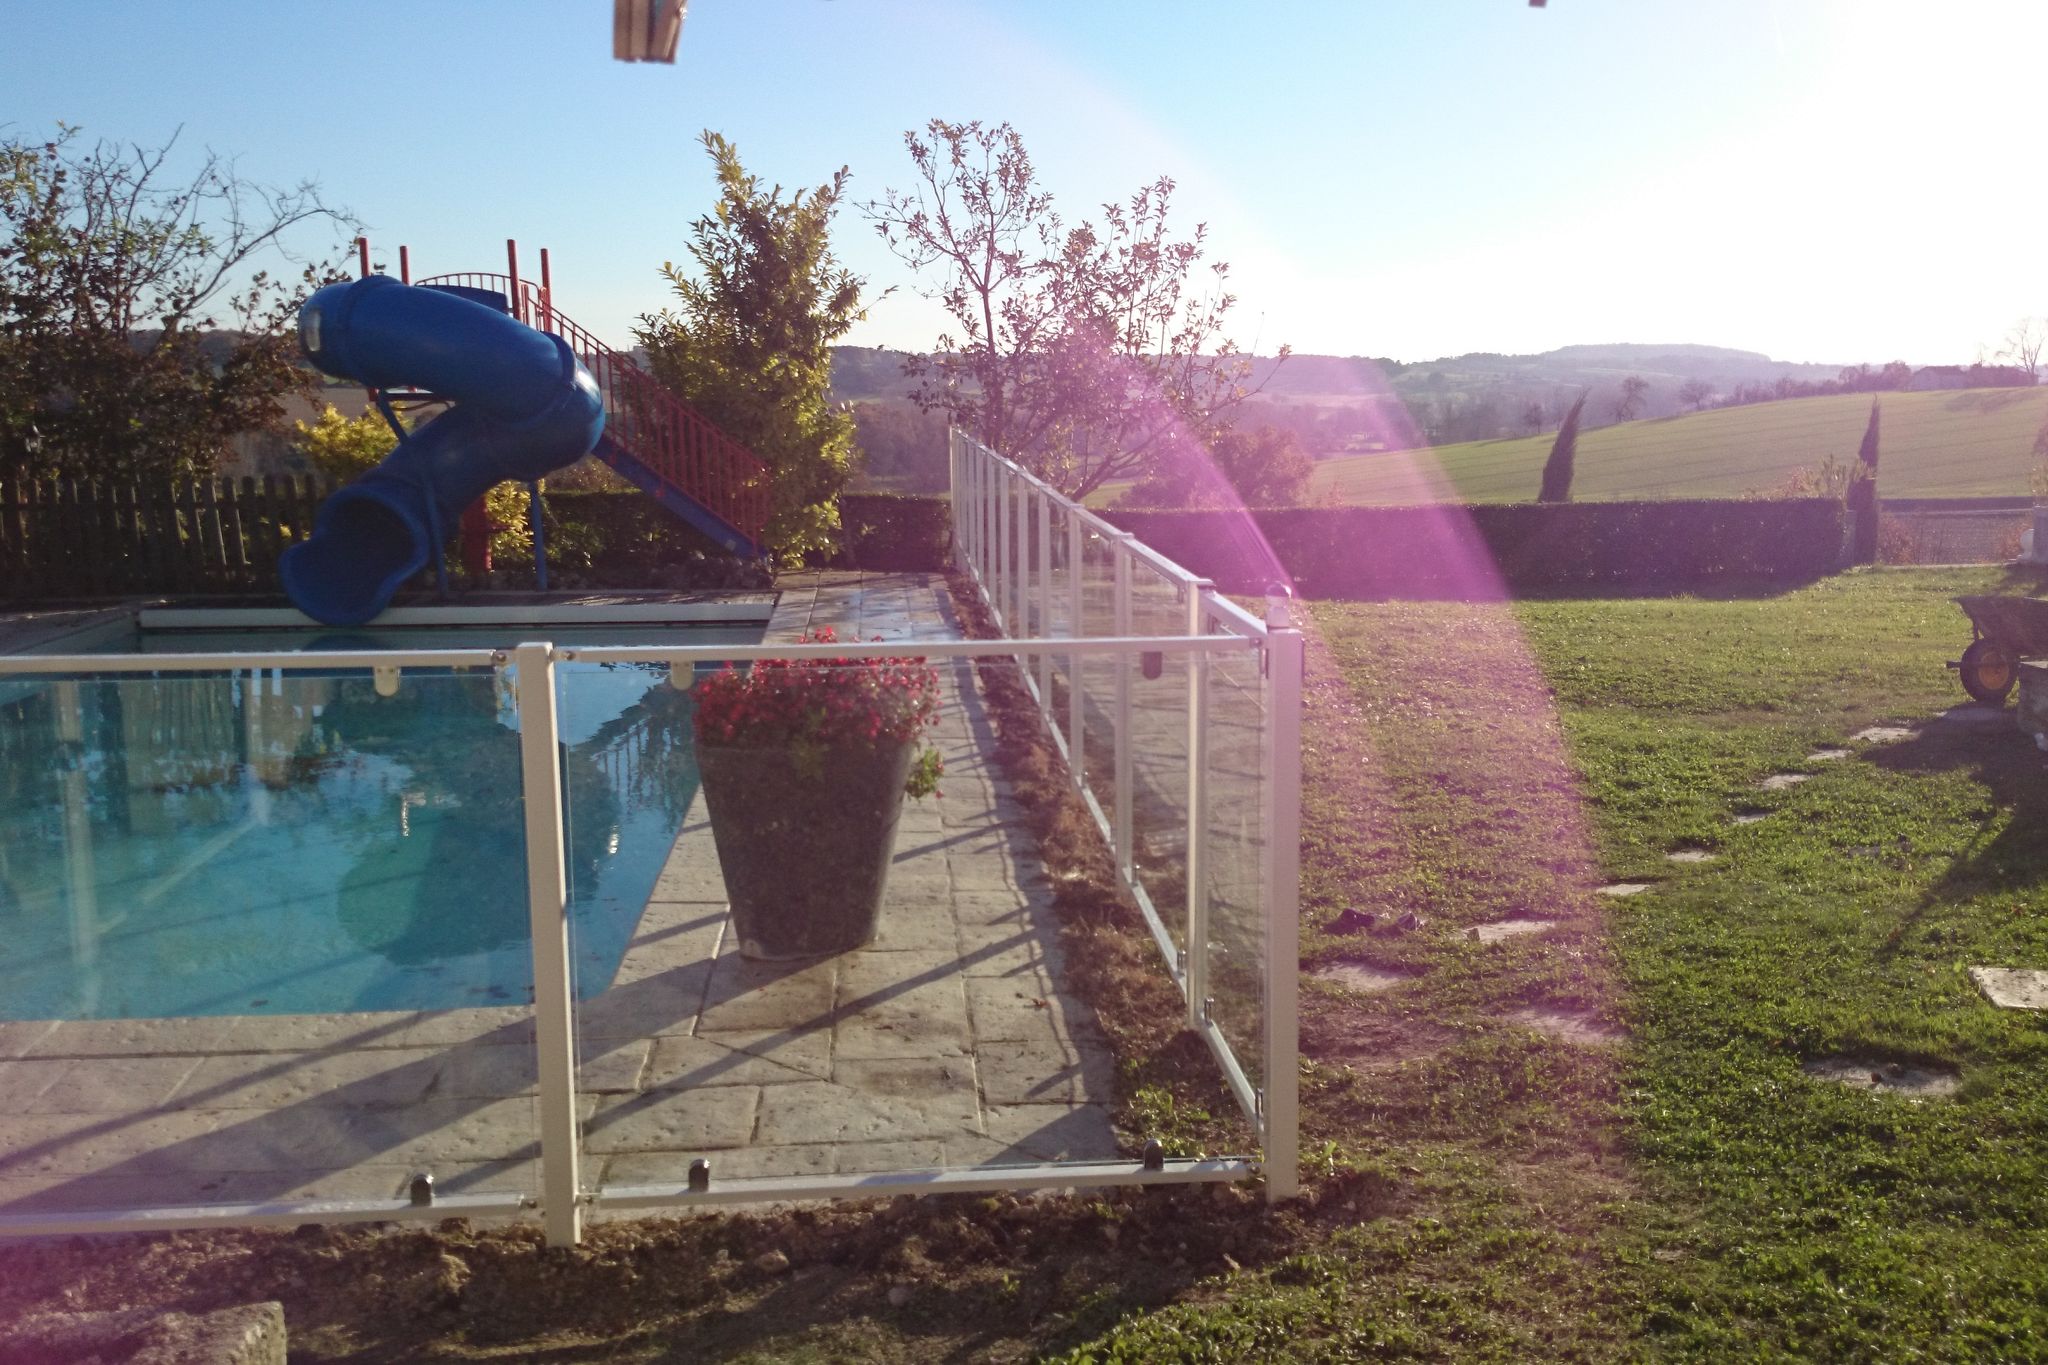 Maison de vacances spacieuse avec piscine à Lusignac